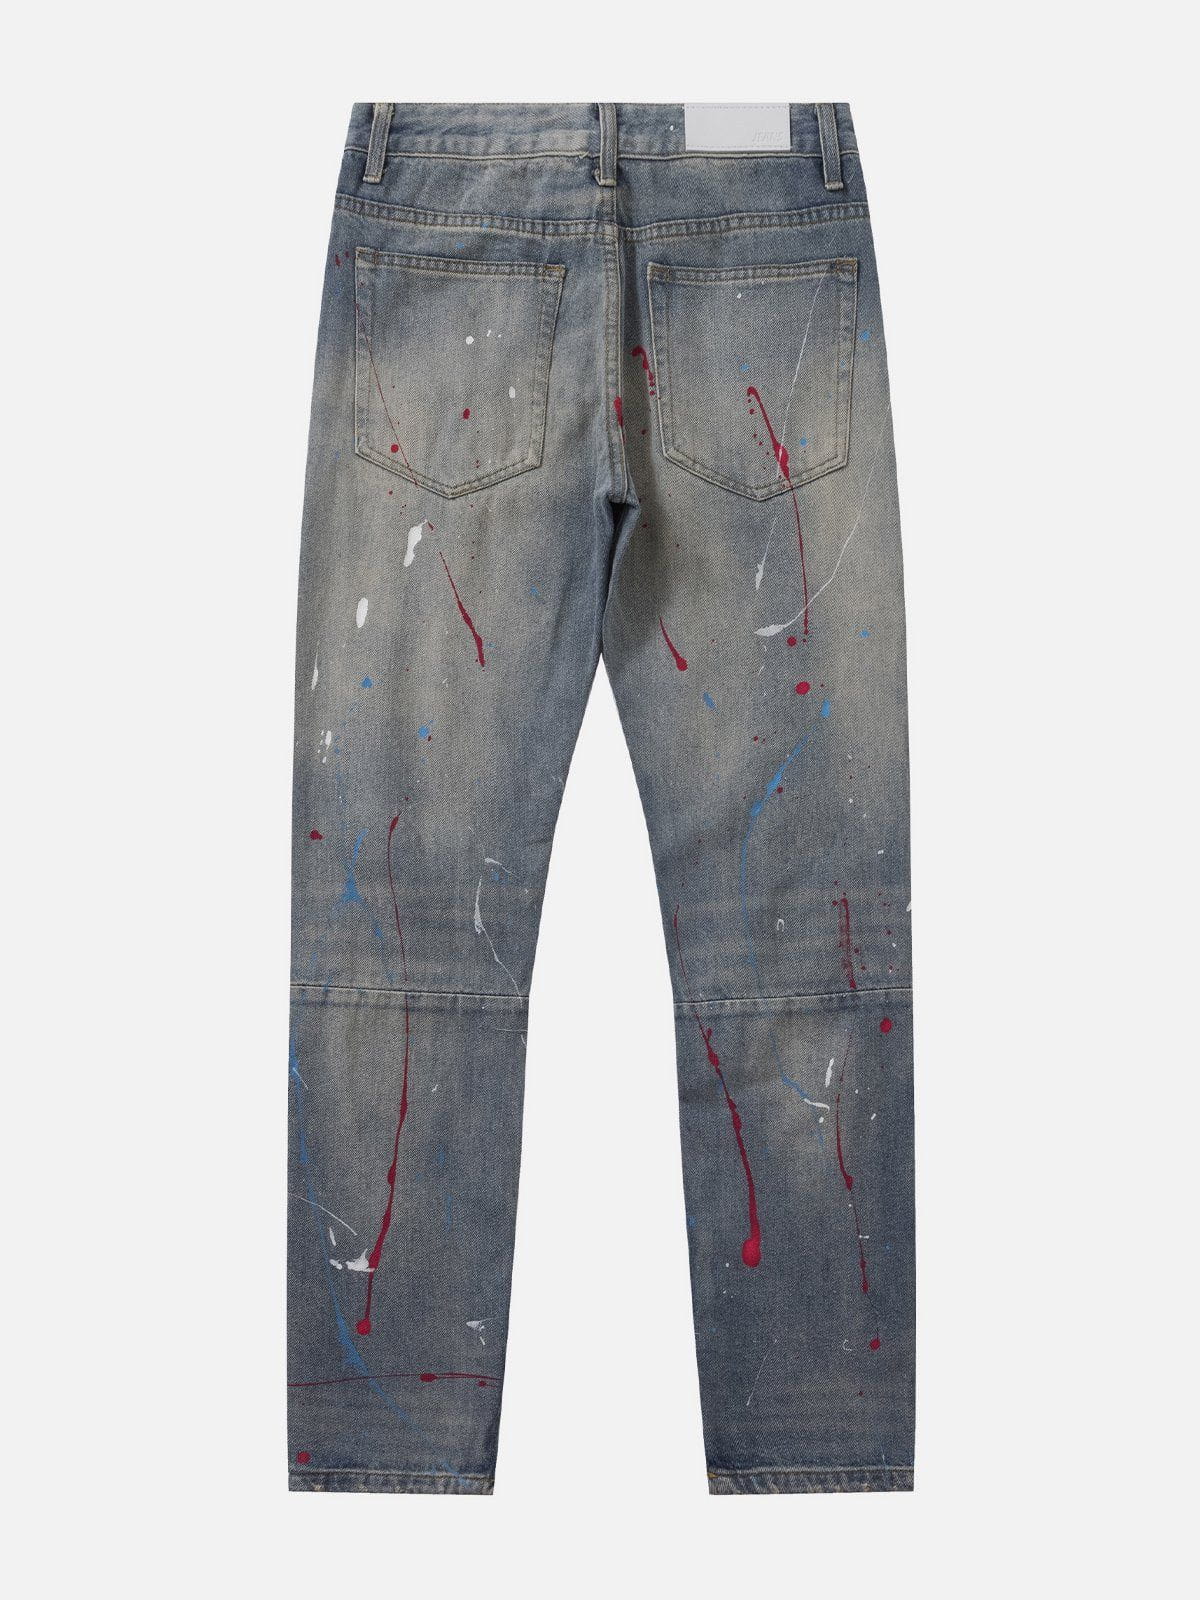 Eprezzy® - Distressed Splashed Ink Graffiti Jeans Streetwear Fashion - eprezzy.com